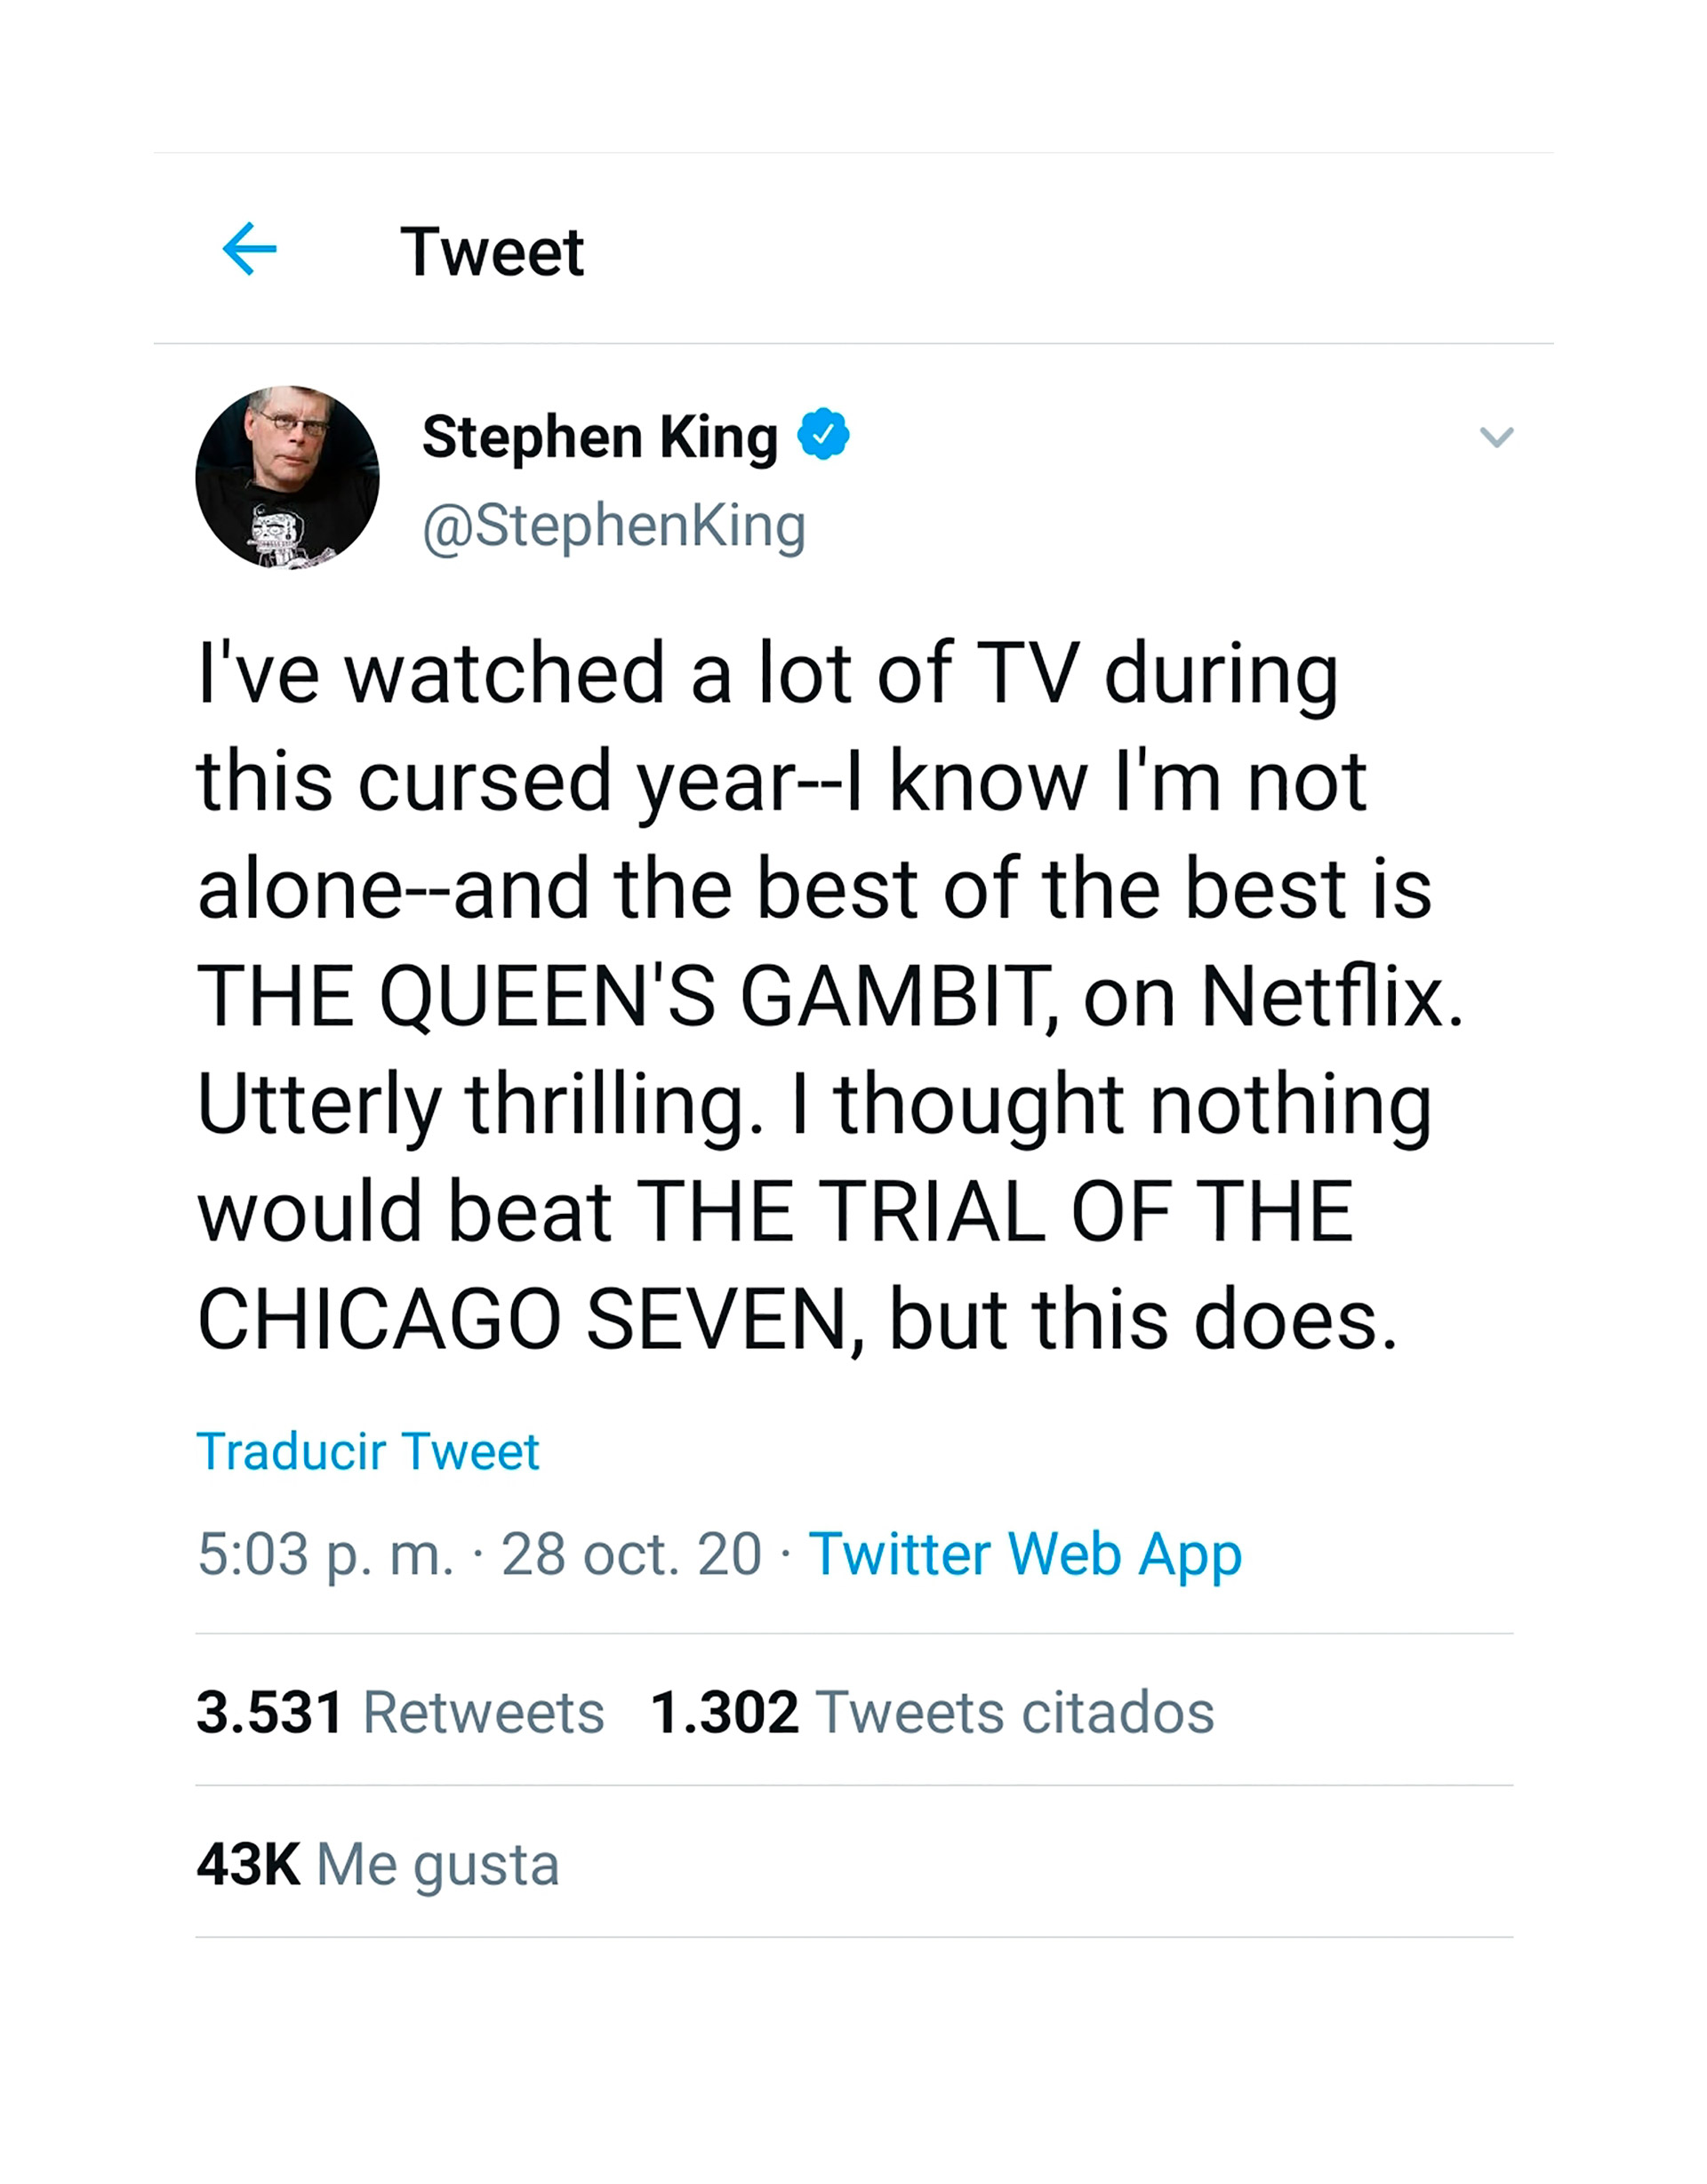 El elogio de Stephen King a la serie: “He visto mucha televisión durante este maldito año. Sé que no estoy solo, y lo mejor de lo mejor es 'The Queen´s Gambit'. Totalmente emocionante. Pensé que nada superaría a 'The Trial of the Chicago Seven', pero lo hizo”